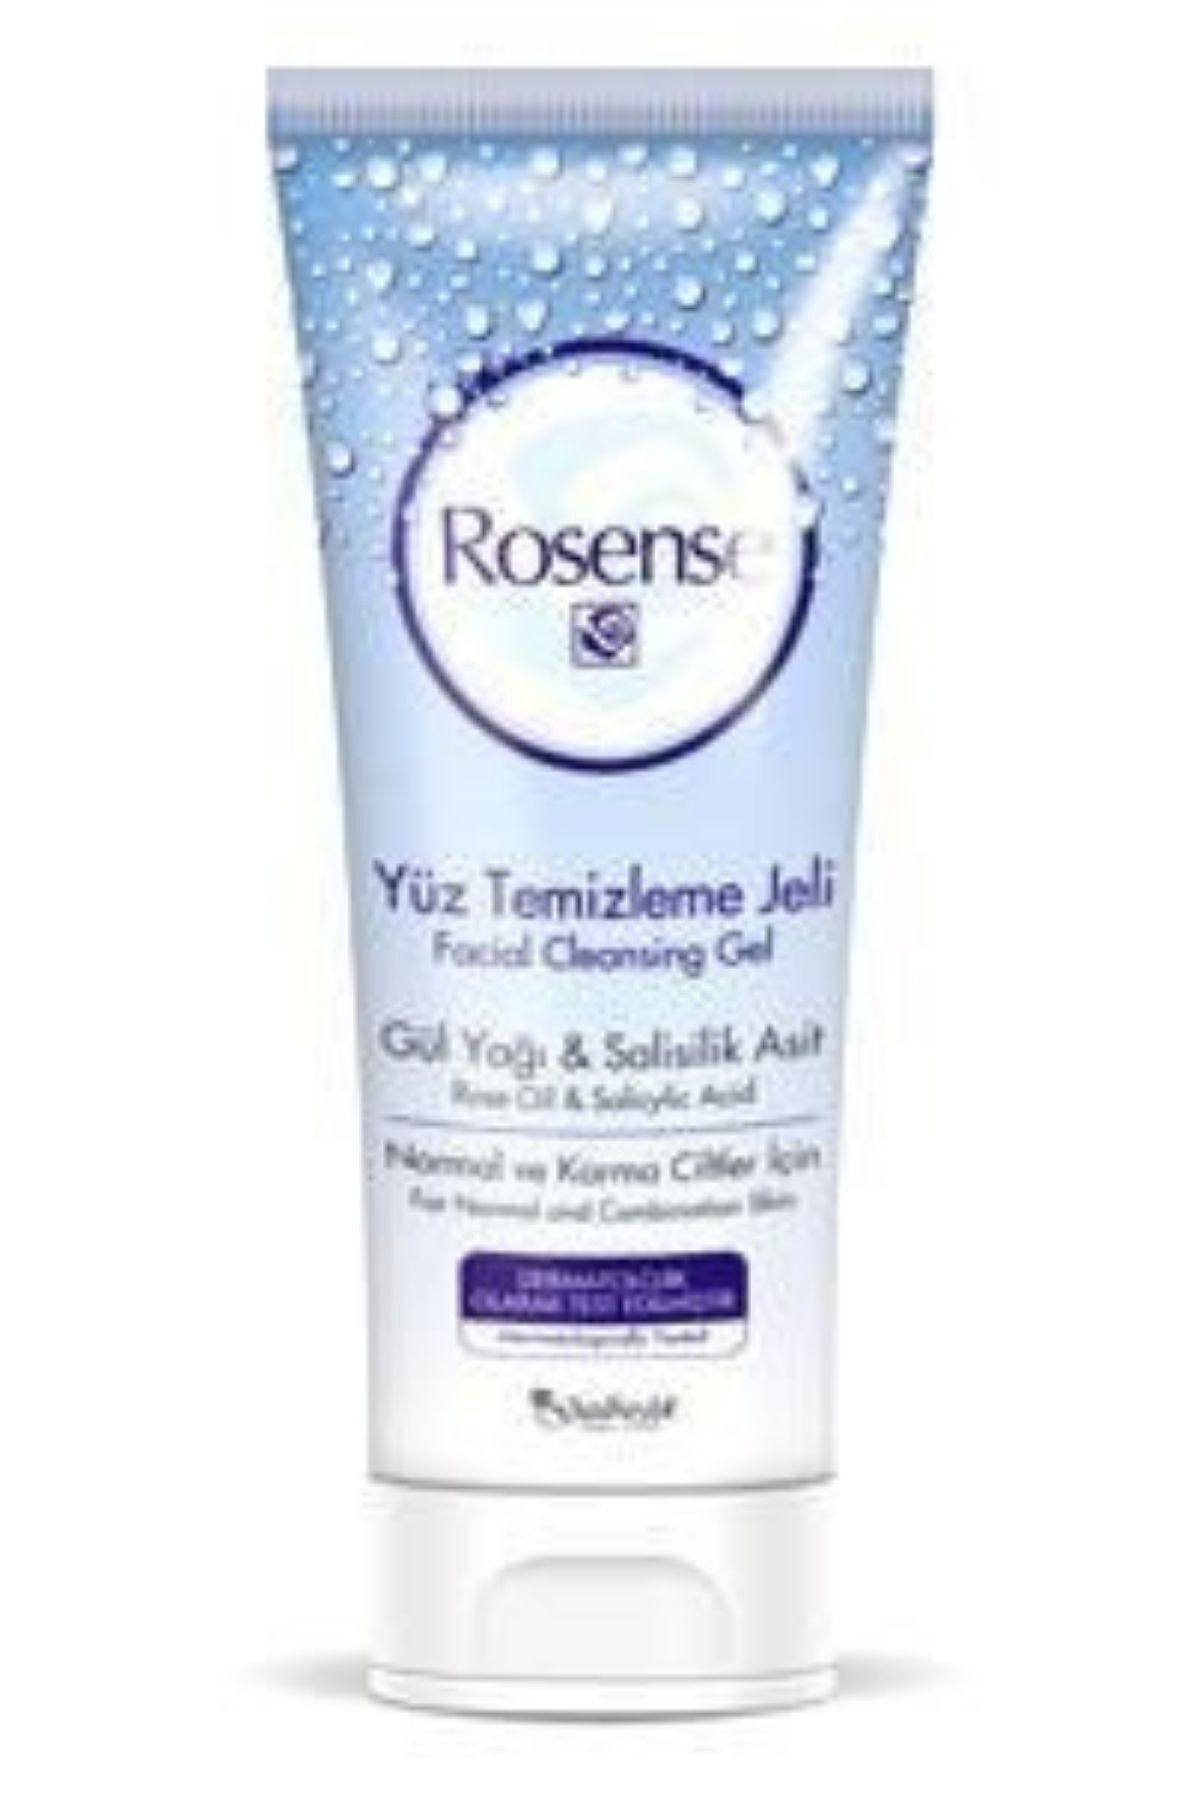 Rosense Yüz Temizleme Jeli 100 ml. Gül Yağı ve Salisilik Asit İçerikli Siyah Noktaları Temizler